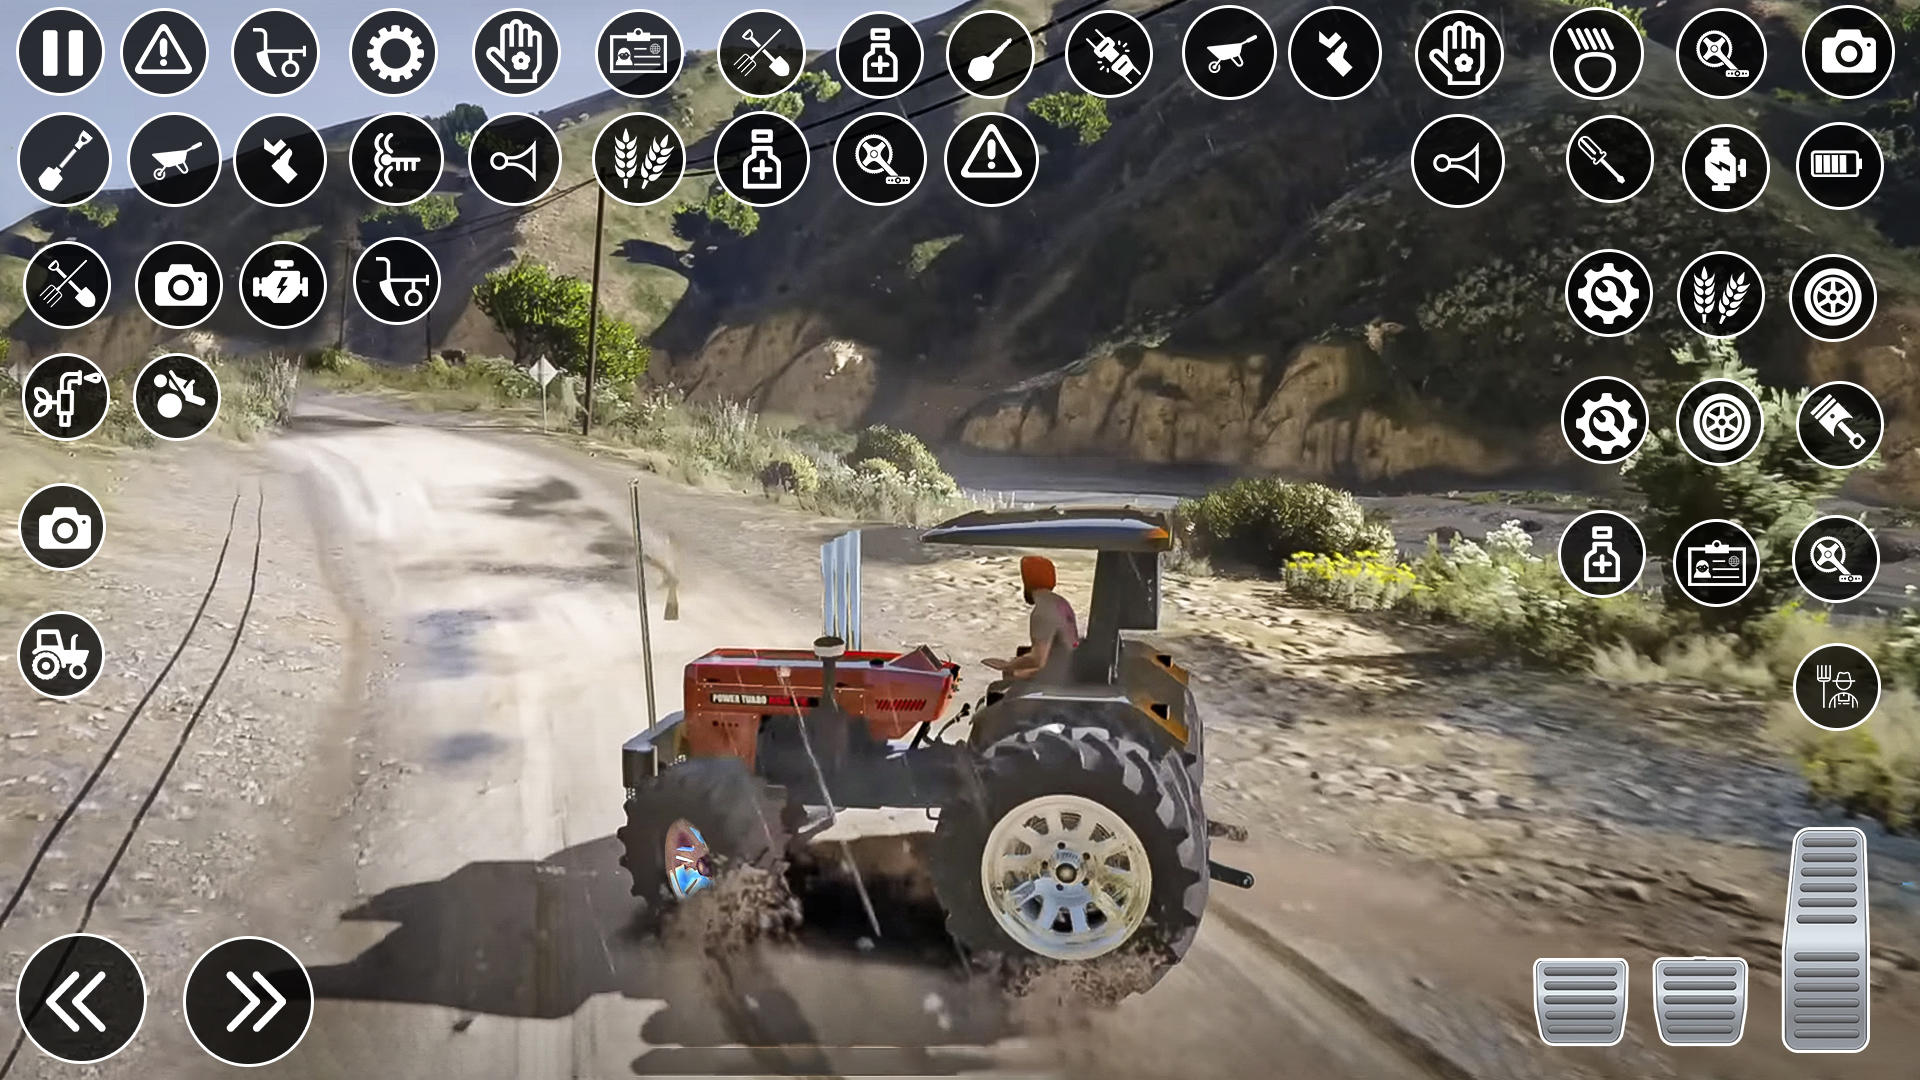 Screenshot 1 of Juego de agricultura de tractores indios 3D 0.2